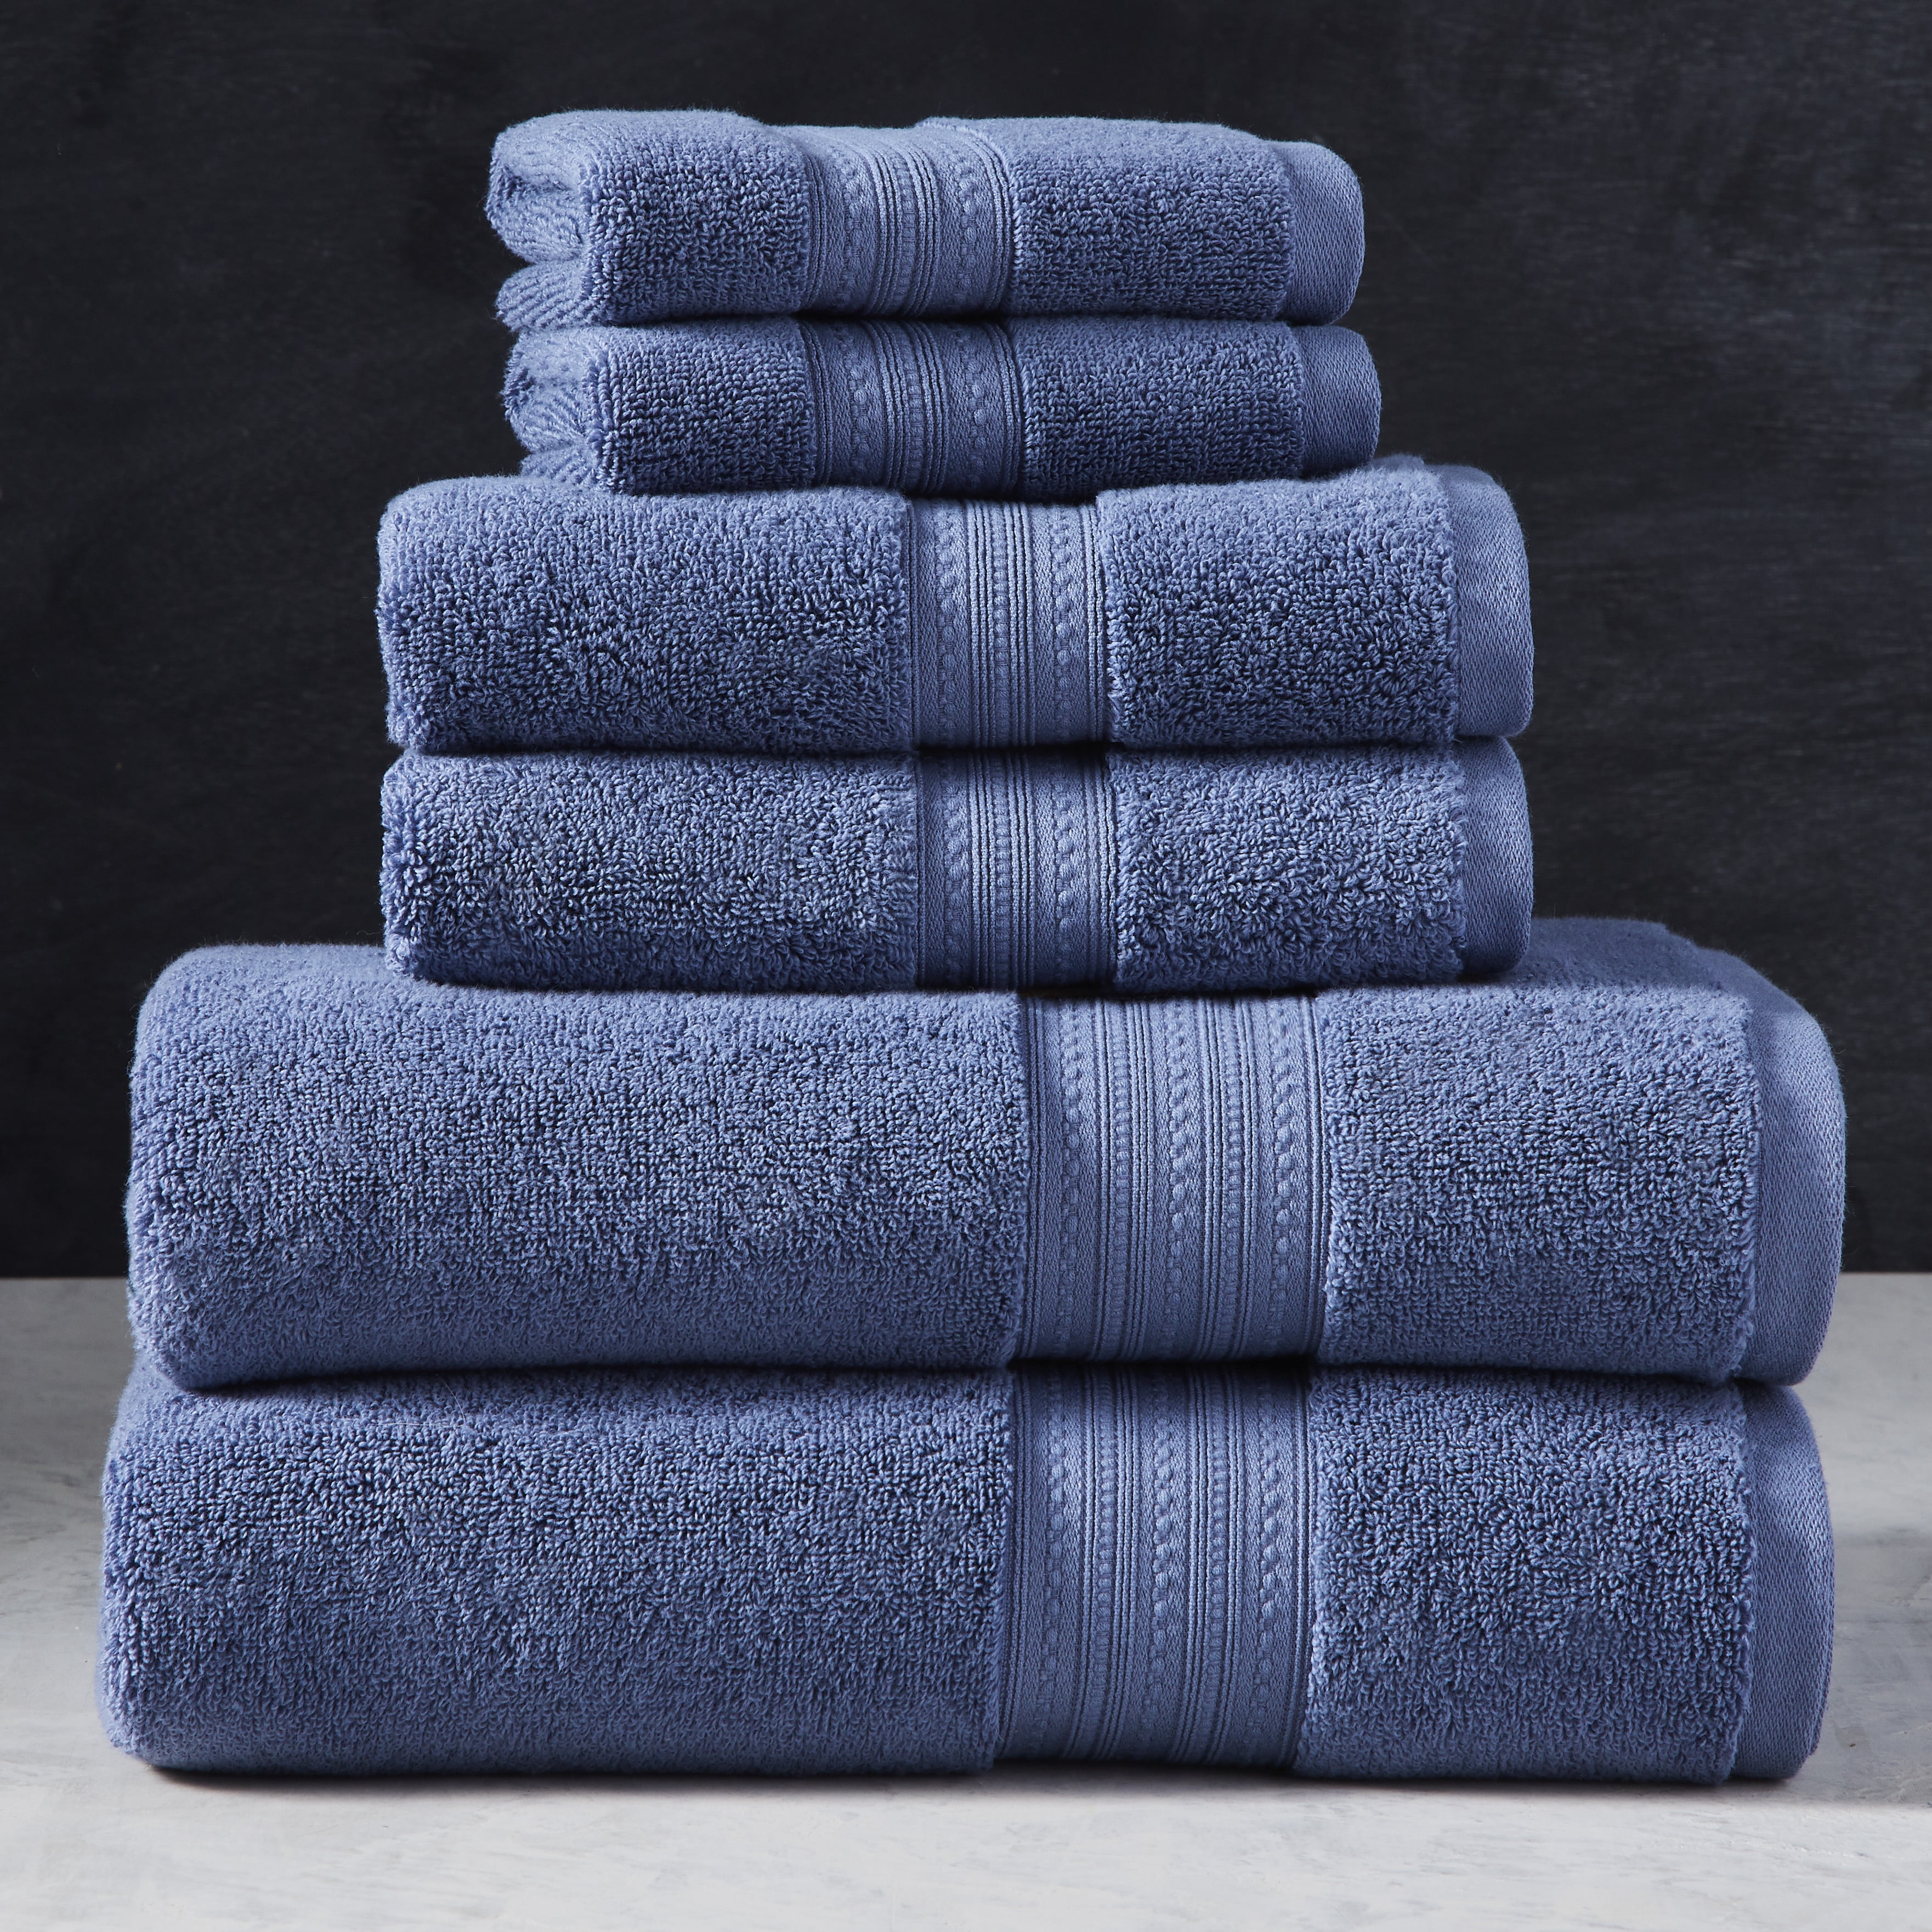 Tea towels, Amow, White/Blue, Pack of 2 pcs - Nicolas Vahé